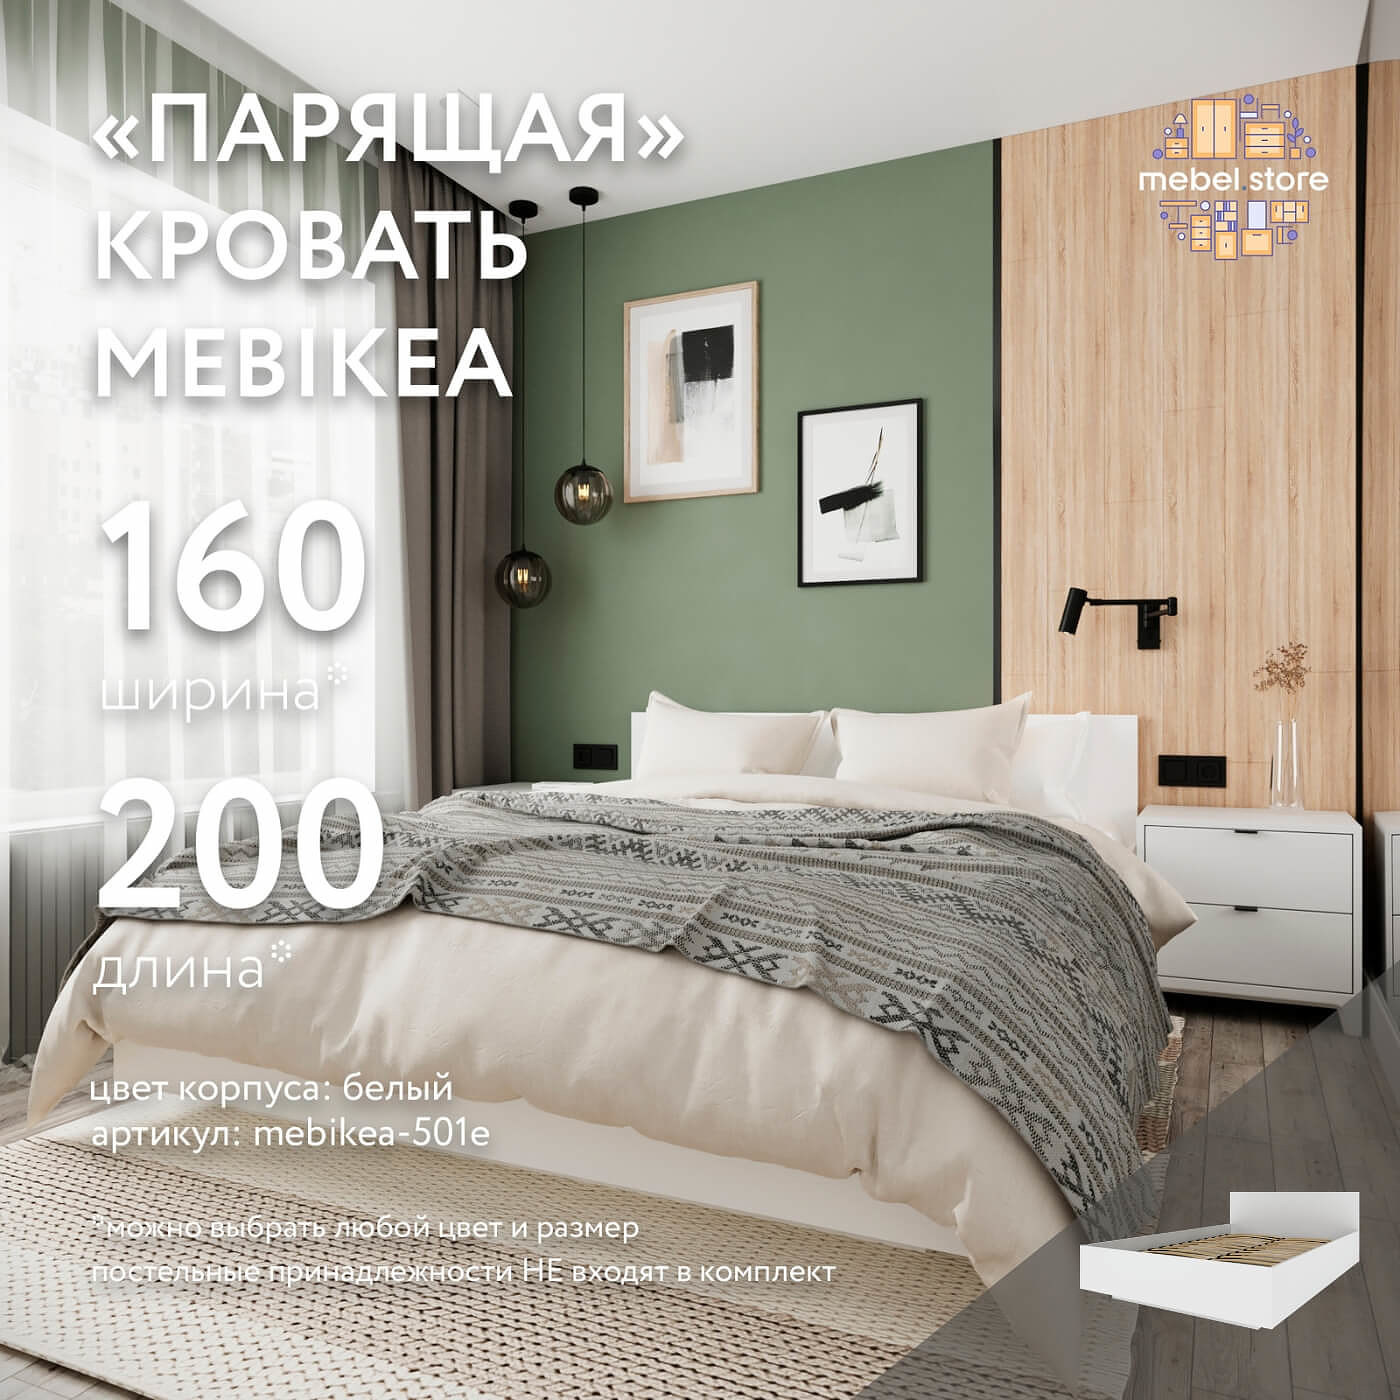 Кровать Mebikea-501e двуспальная минимализм - фото 1 large